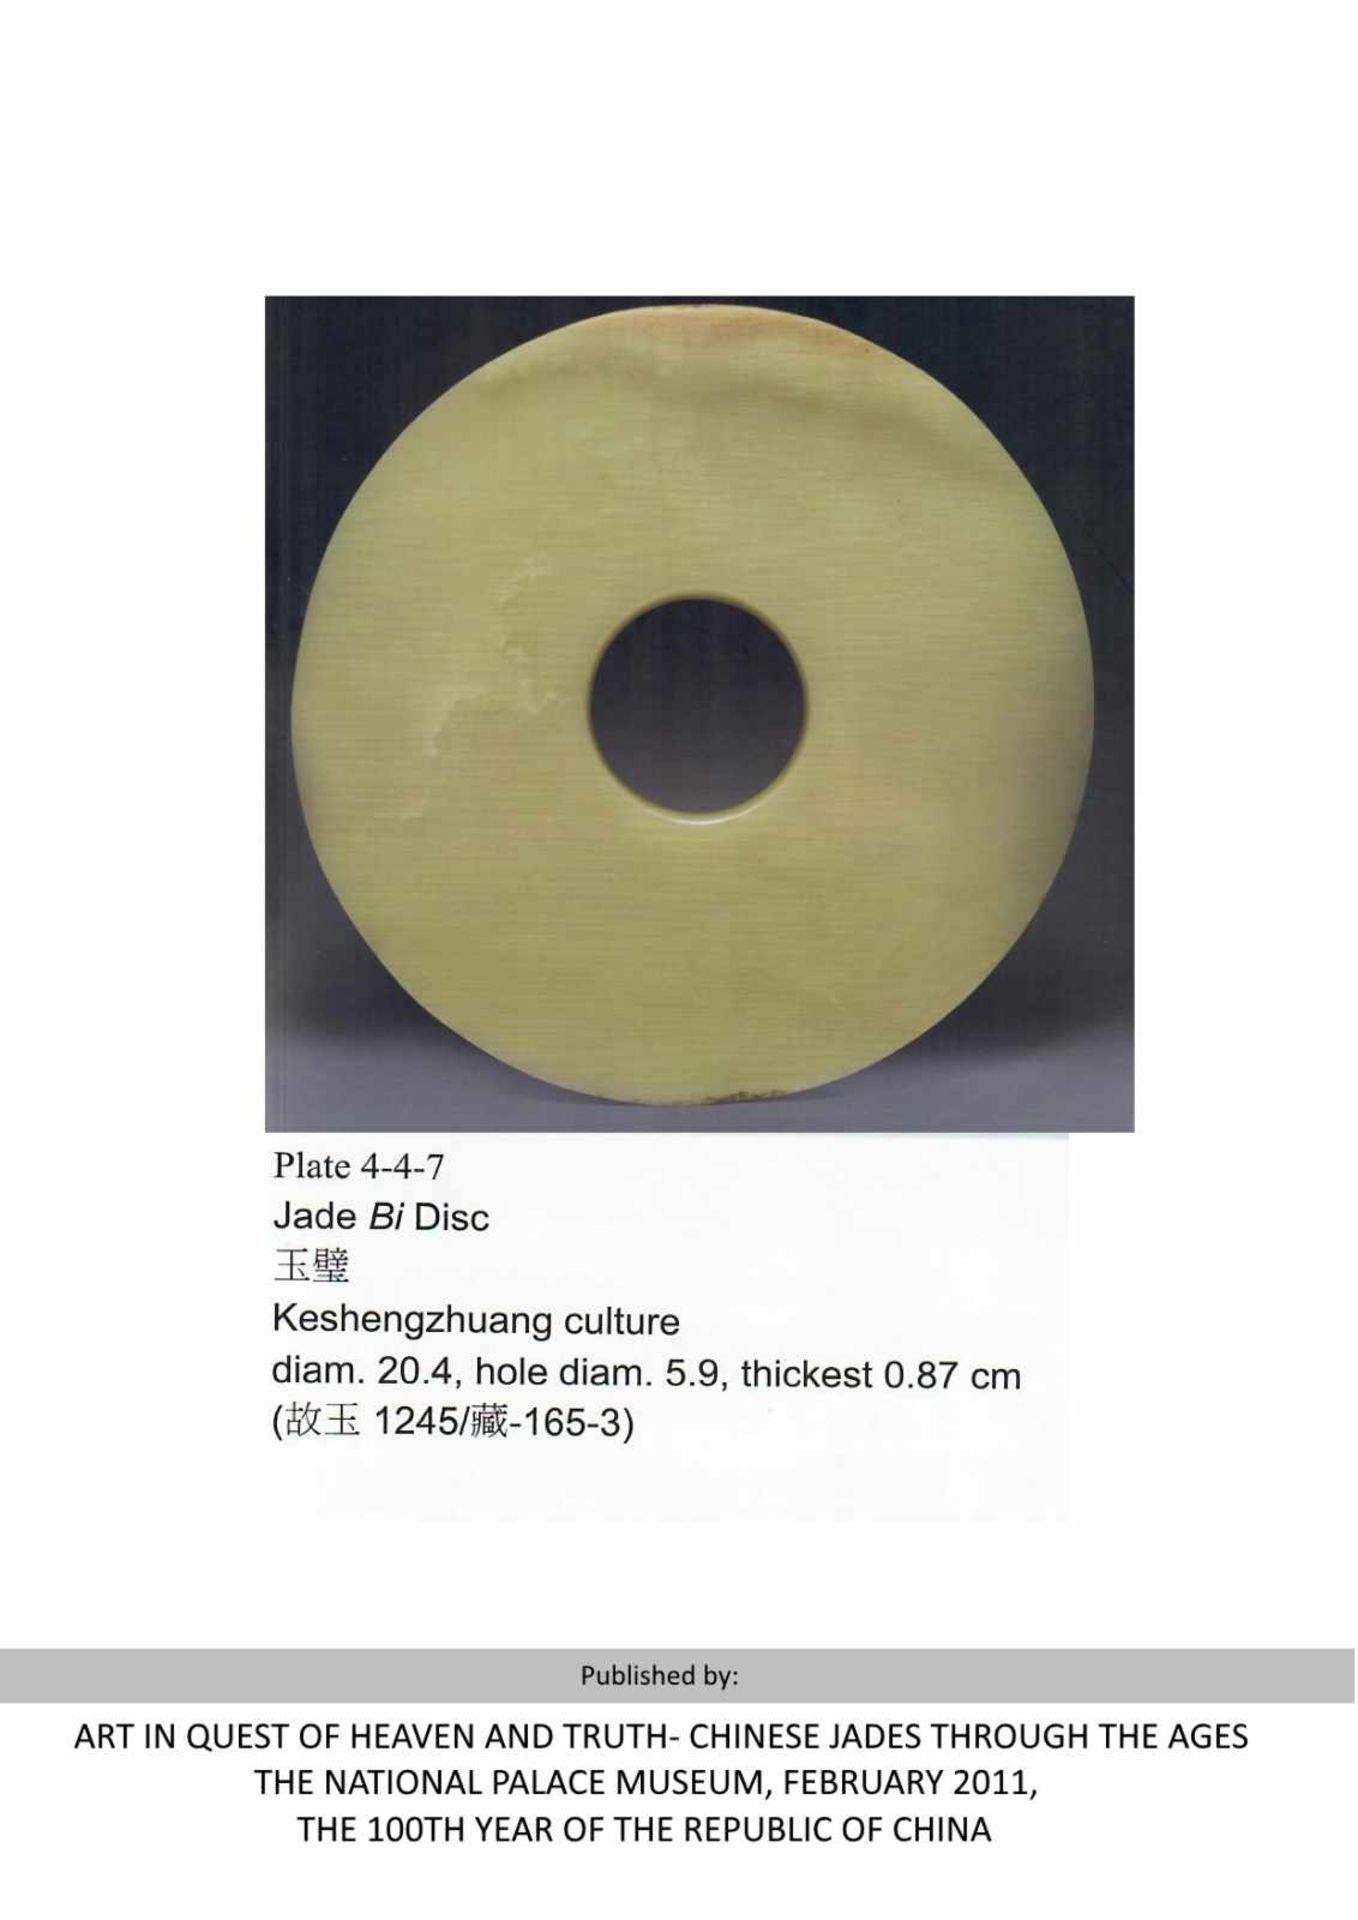 EINE SELTEN DÜNN GESCHLIFFENE BI-SCHEIBE 玉璧。中國，新石器時代晚期至商代，約公元前2000 年左右。外直徑 16.1 厘米，內直徑 6.1 厘米，厚0.2- - Image 6 of 6